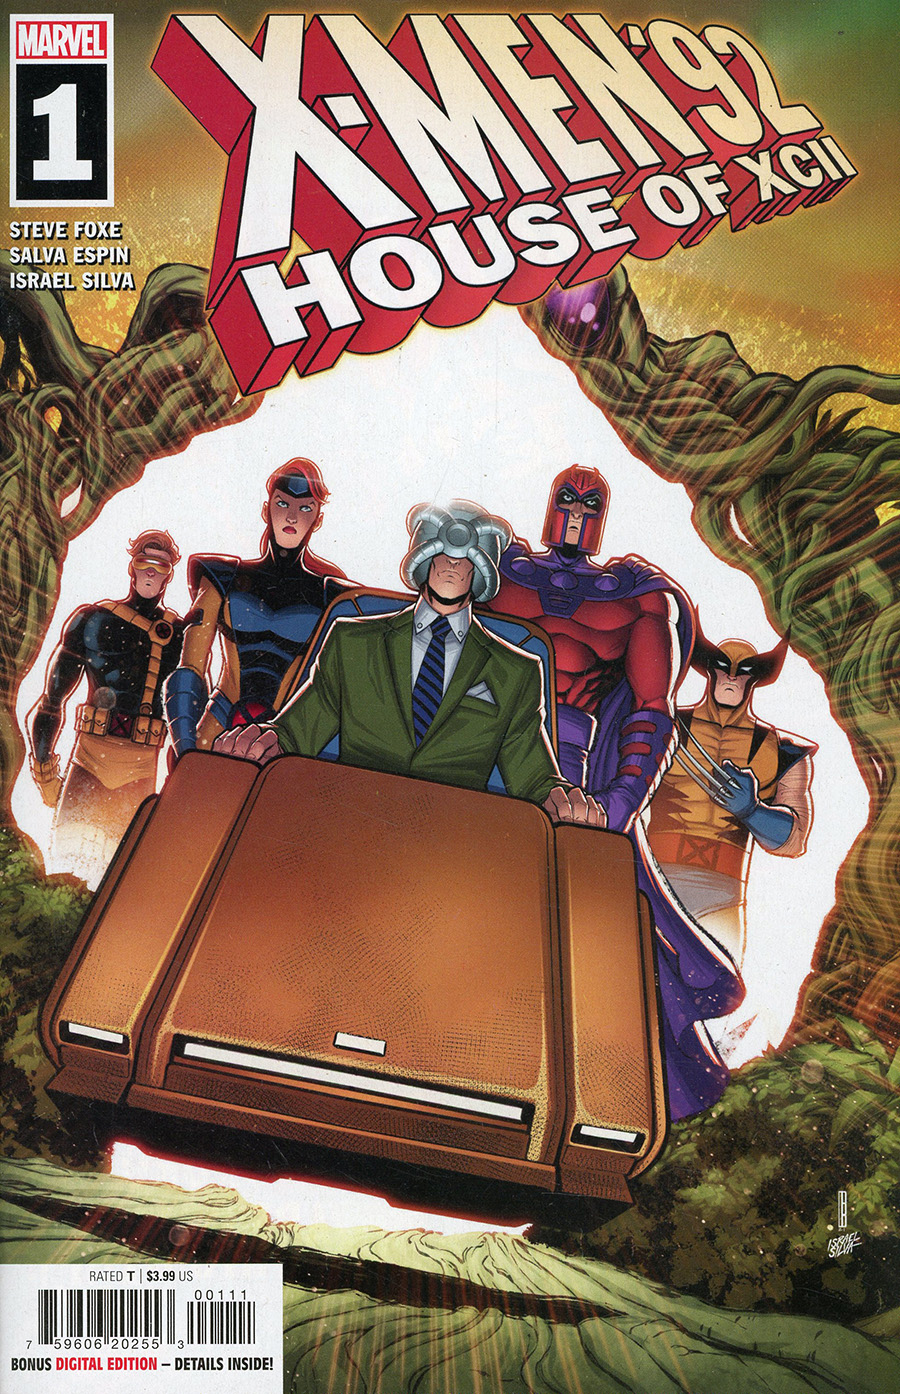 X-Men 92 House Of XCII #1 Cover A Regular David Baldeon Cover